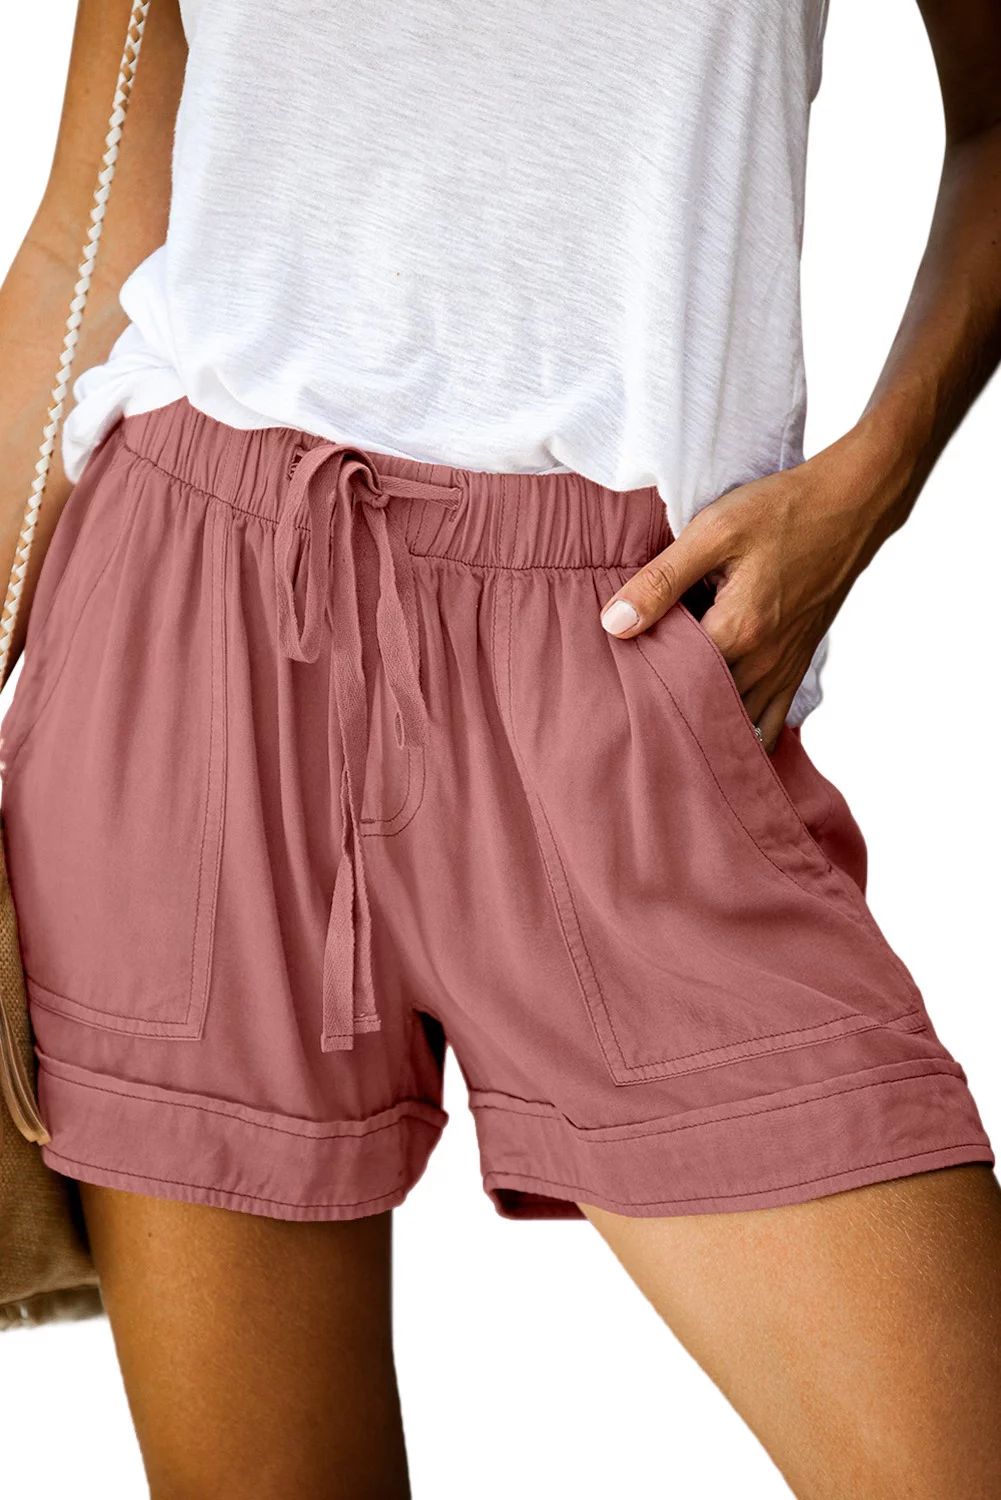 KISSMODA Womens Shorts Summer Loose Fit Comfortable Drawstring Elastic Waist Band Casual Shorts | Walmart (US)